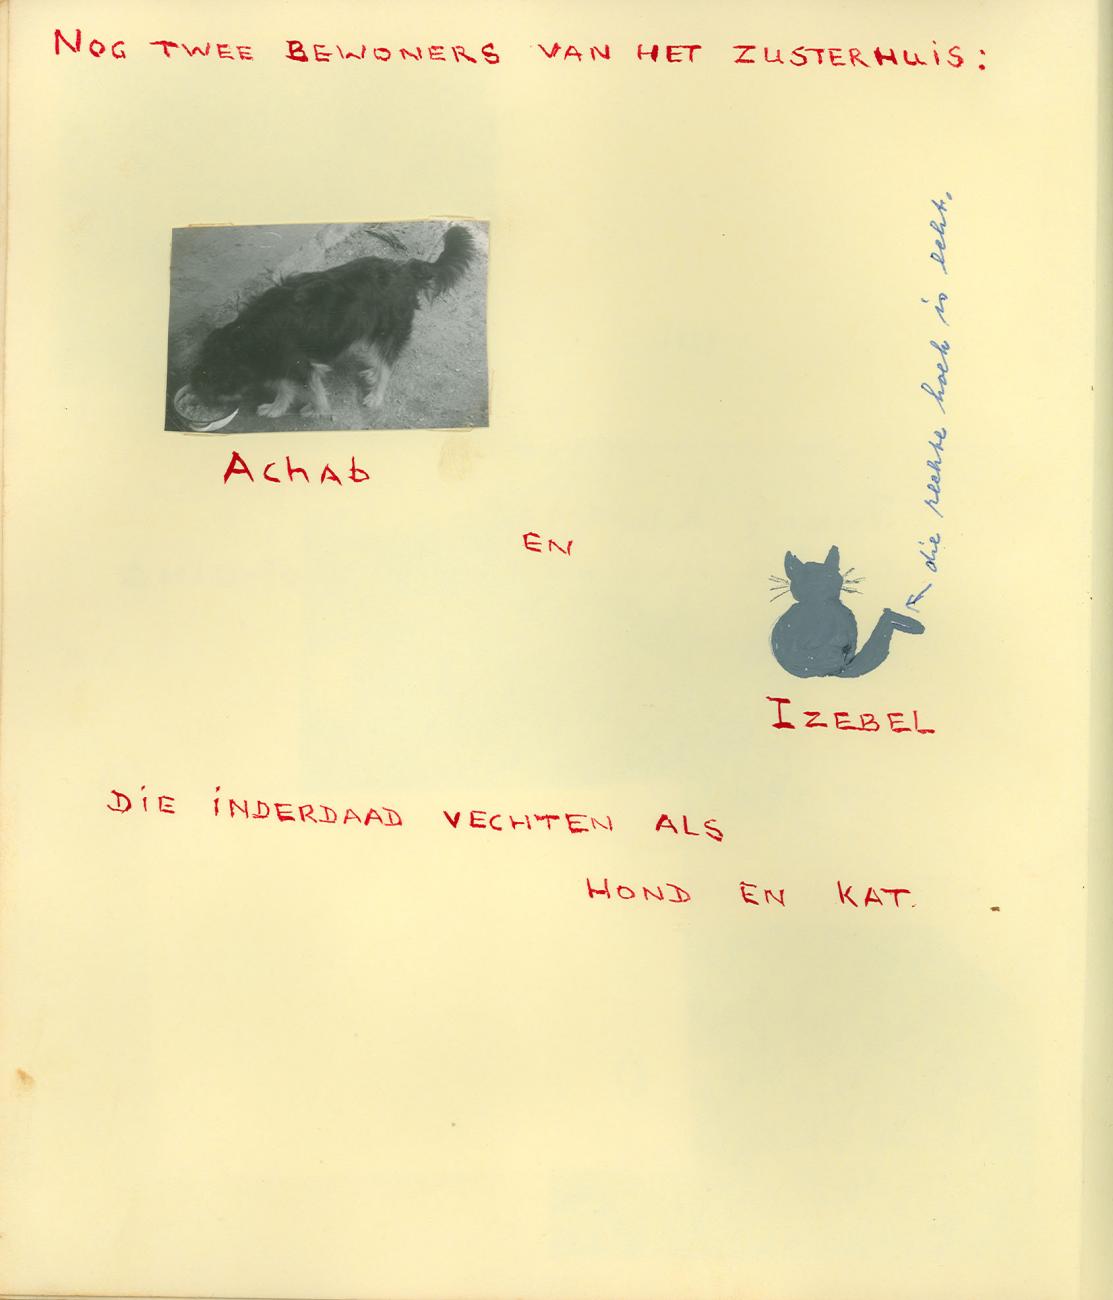 BD/83/16 - 
Huisdieren Achab en Izebel van het zusterhuis in Sarmi
